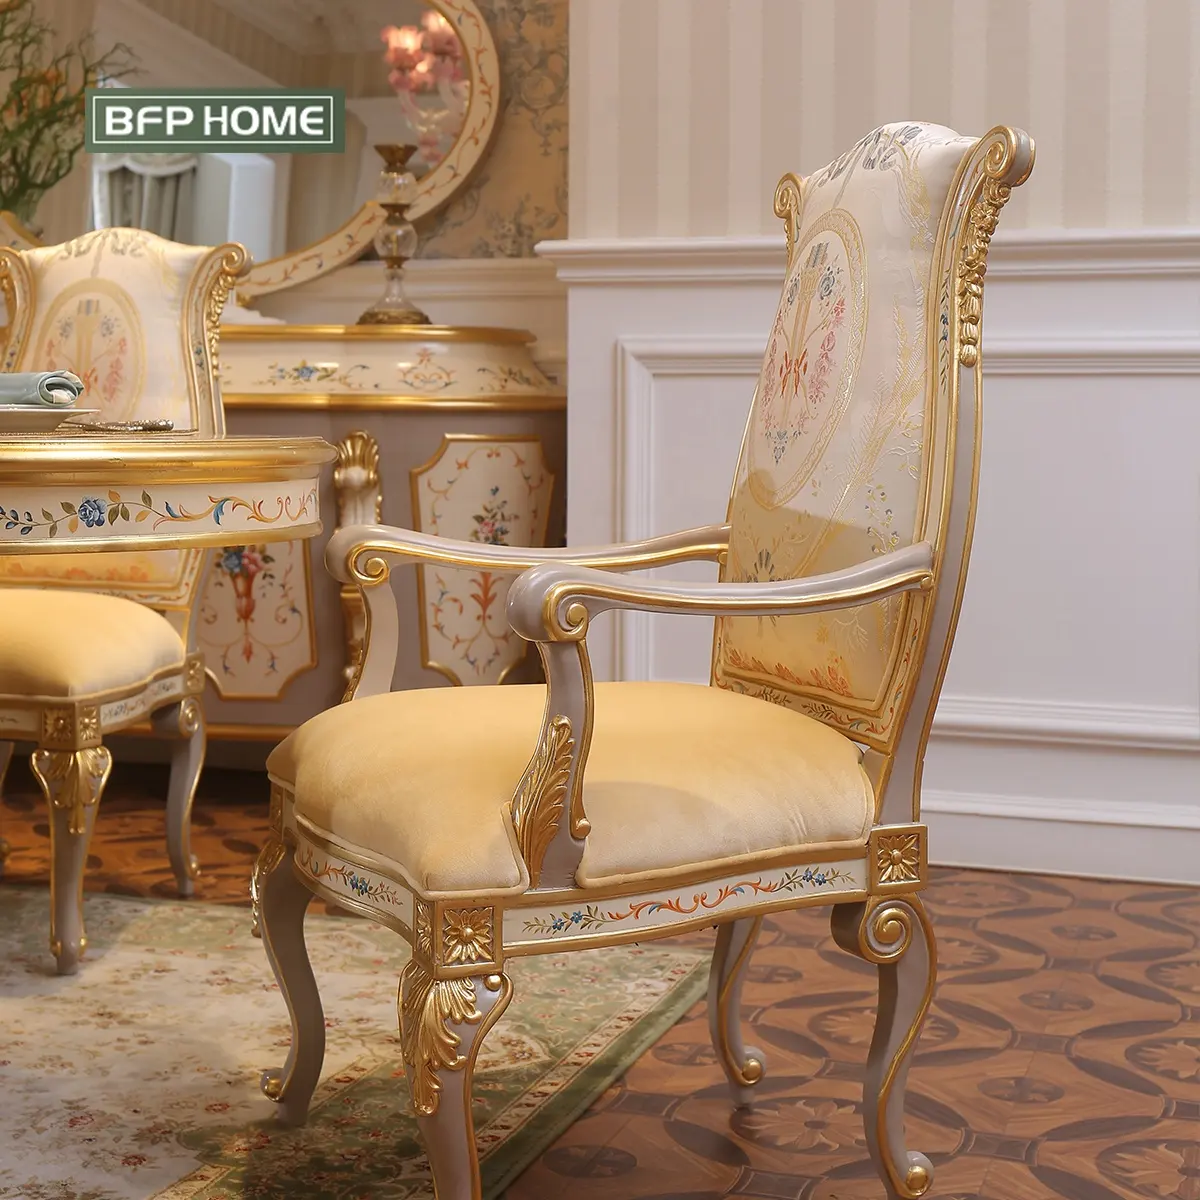 BFP 가정 미국 호화스러운 작풍 프랑스 디자인 단단한 나무 식탁 및 의자 유행과 최신 디자인 실내 가구